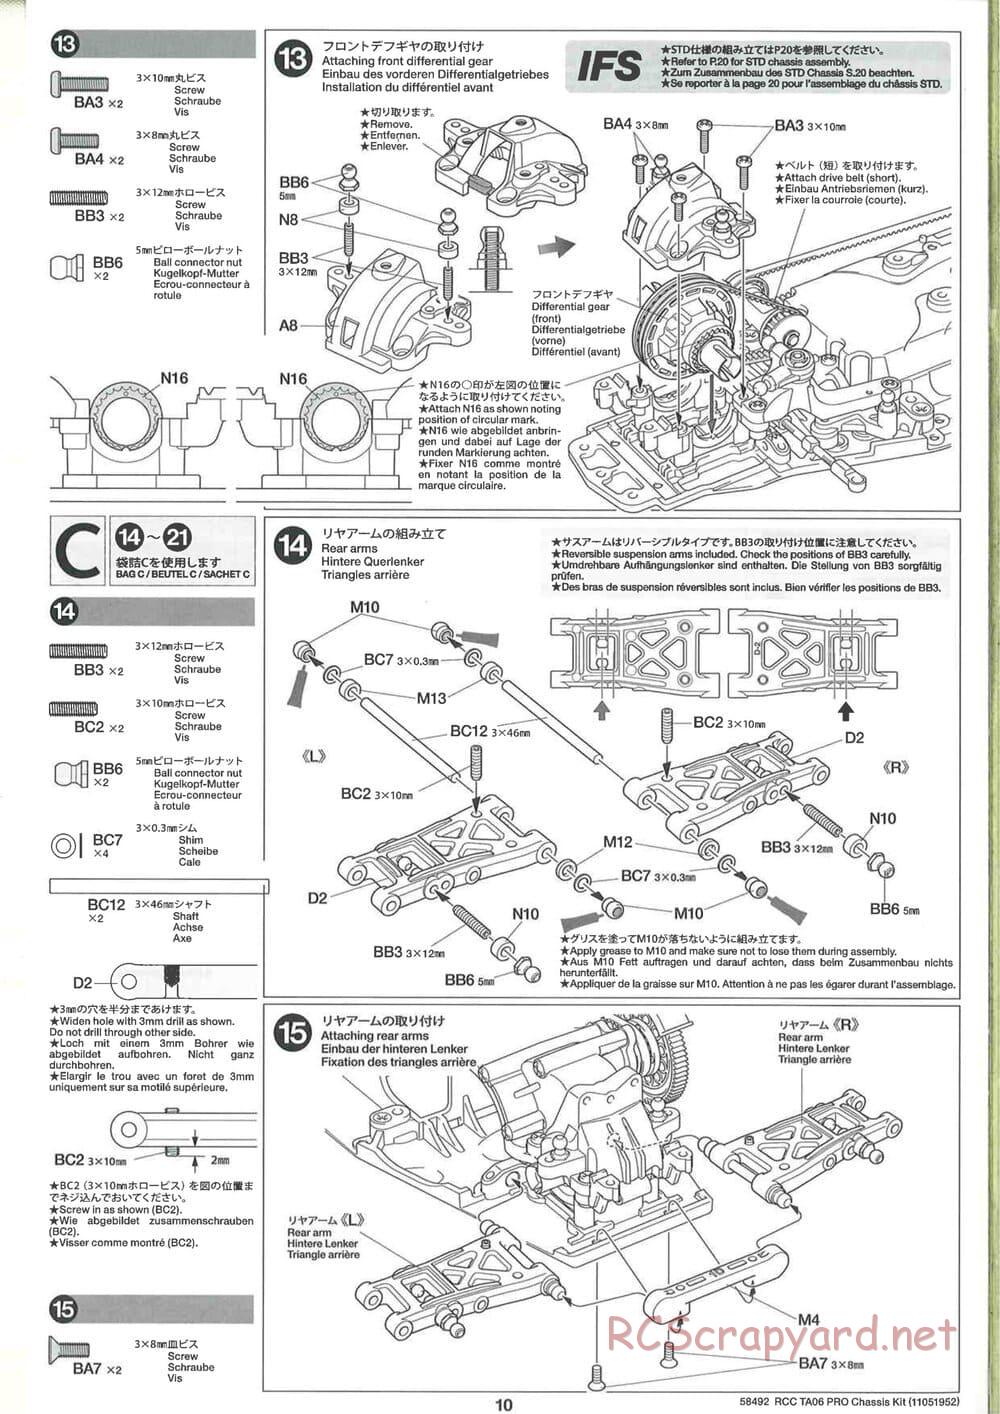 Tamiya - TA06 Pro Chassis - Manual - Page 10